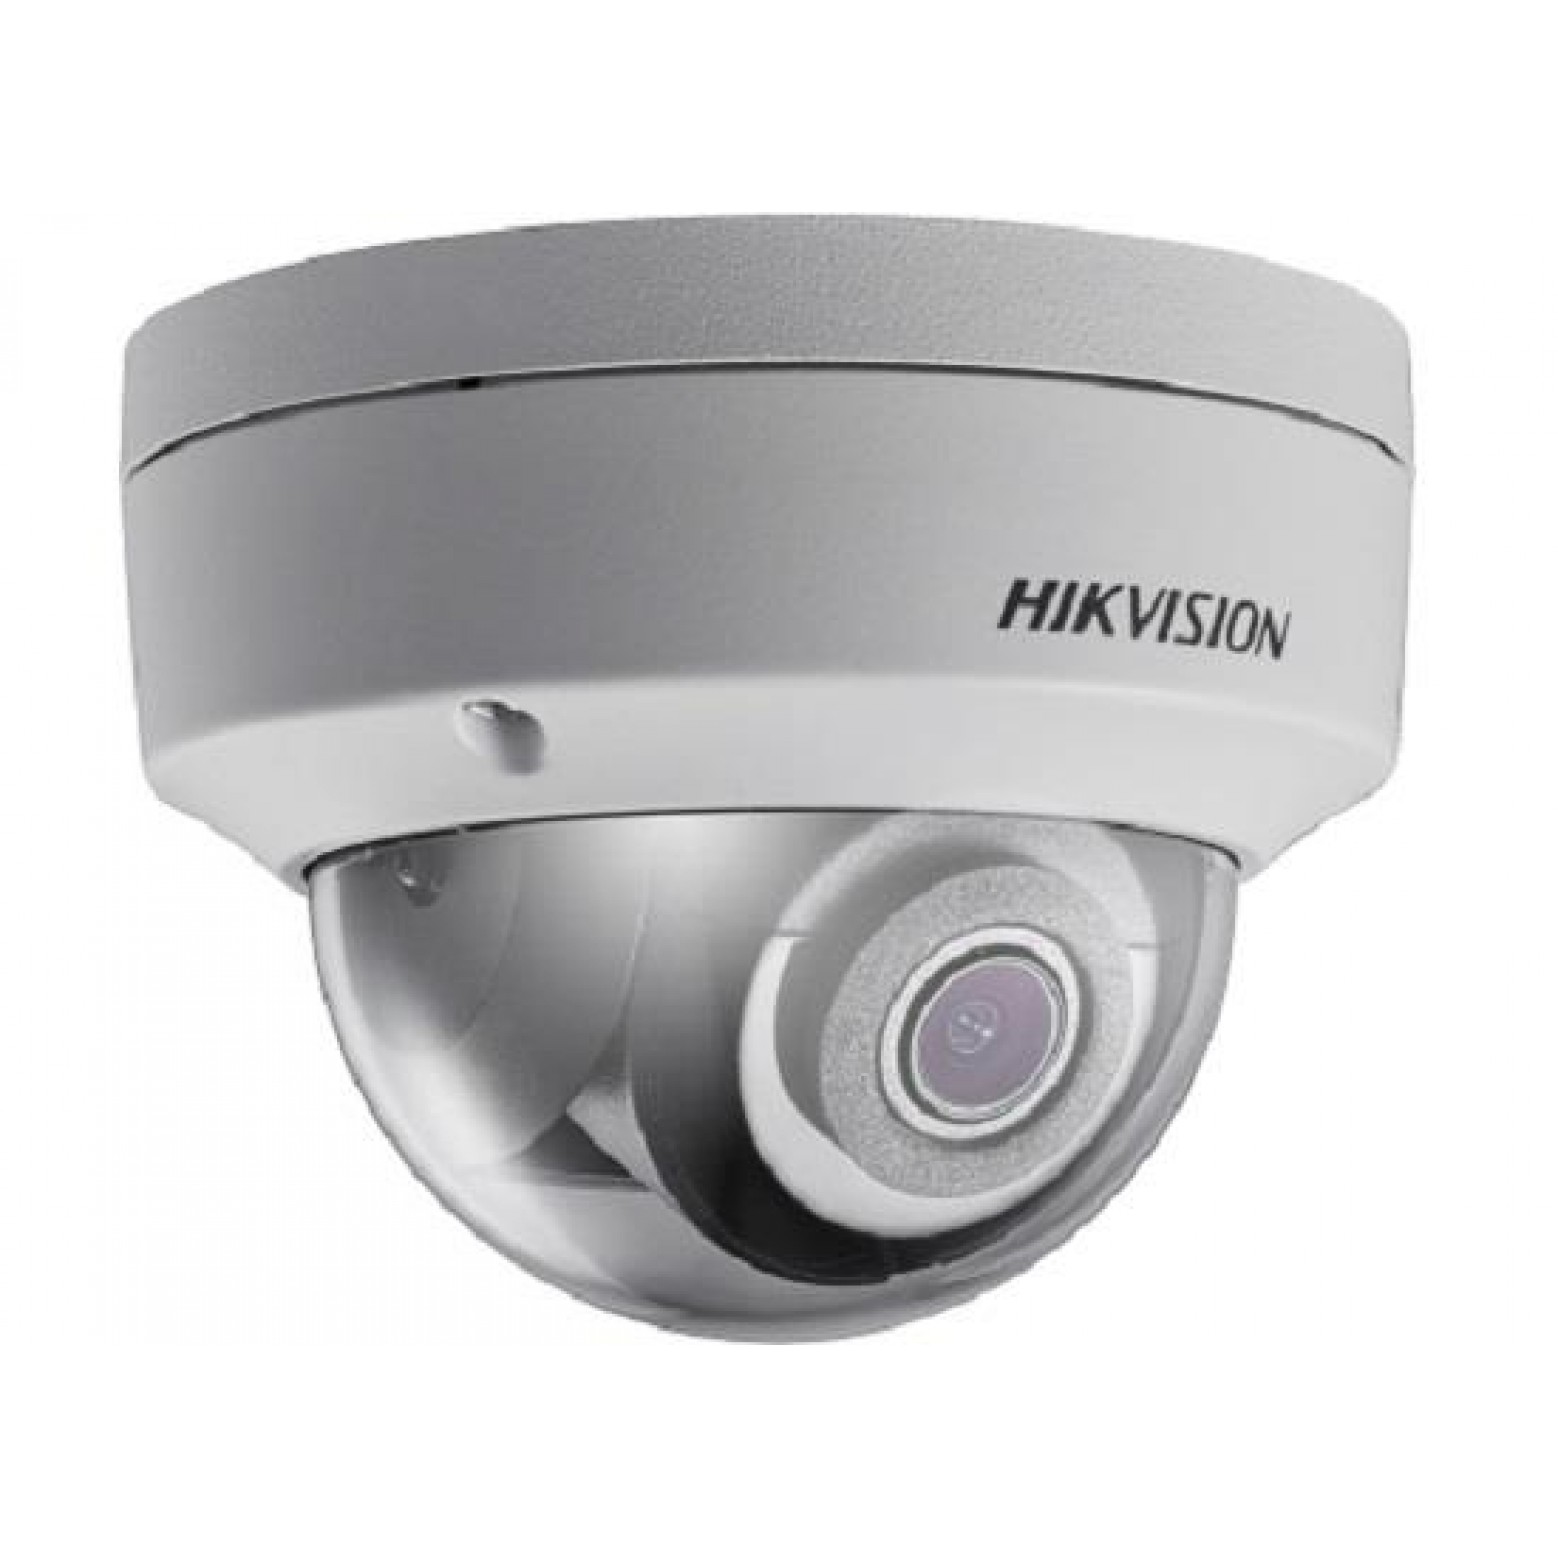 Hikvision DS-2CD2143G0-I Dome Camera Budget Line, 4MP, WDR, IR,